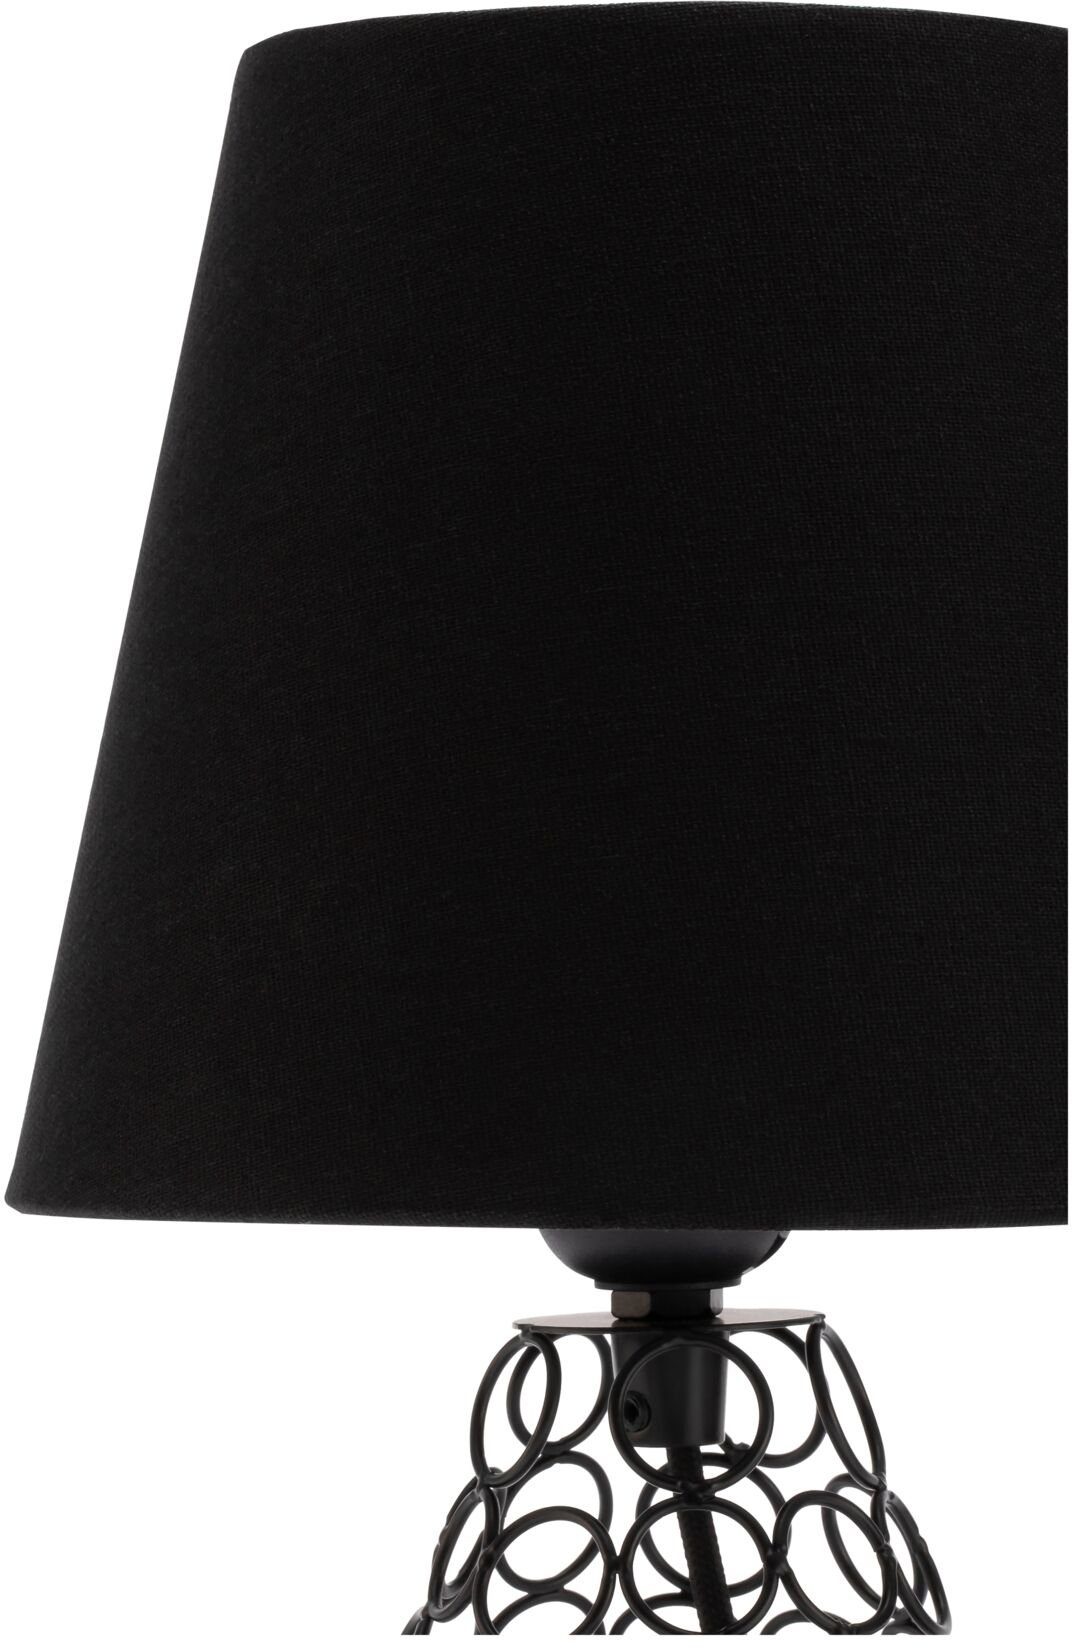 Tischleuchte ohne Pauleen Brilliance Ein-/Ausschalter, Black Stoff/Metall, max20W E27 230V Leuchtmittel, Schwarz